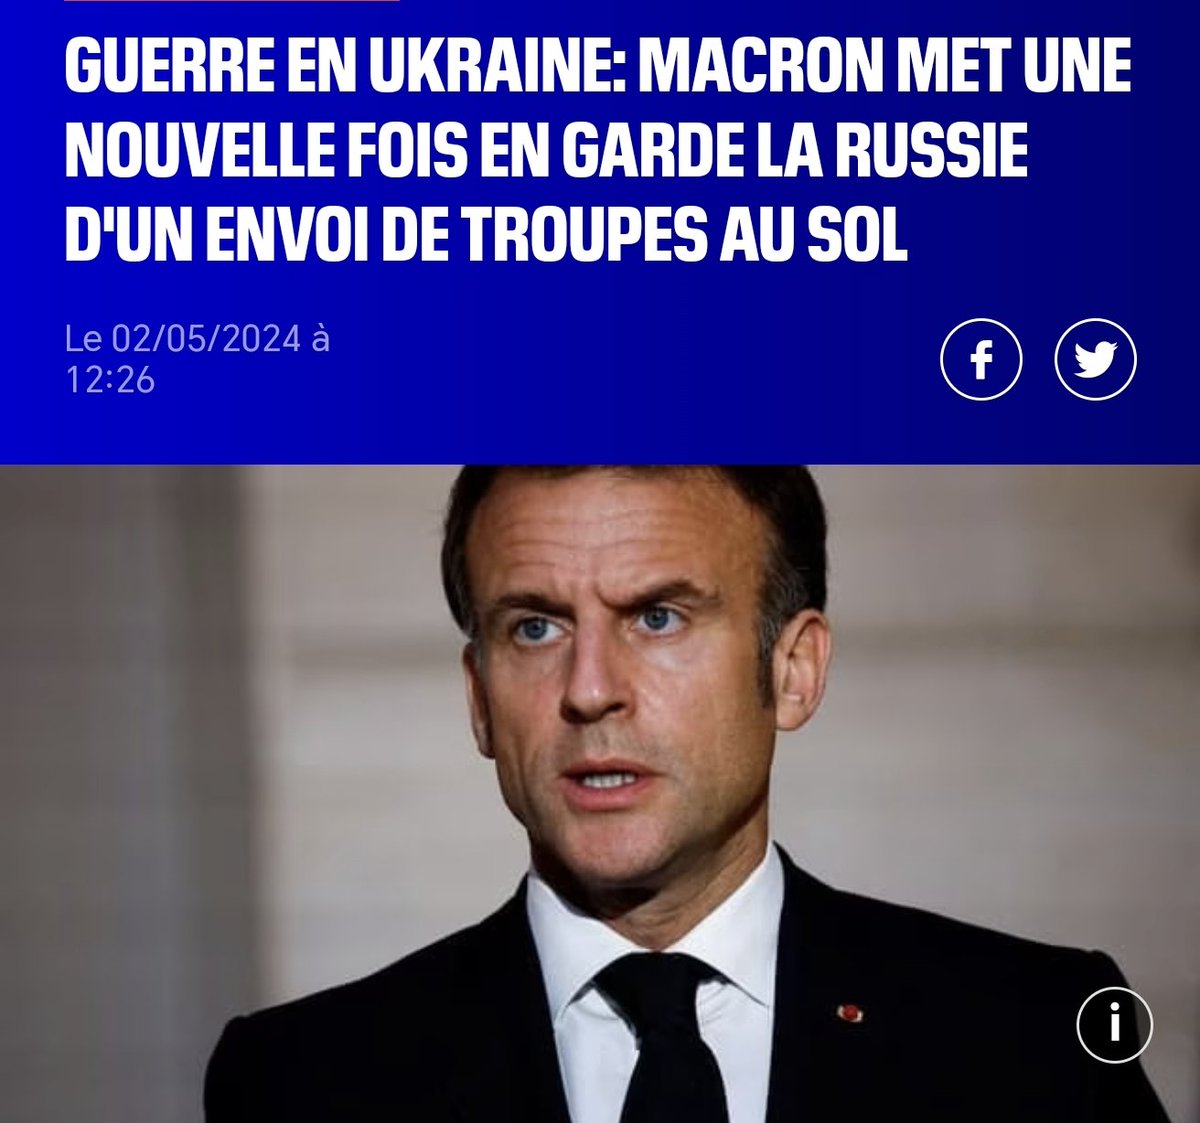 Un jour, il faudra bien que @EmmanuelMacron explique pourquoi il tient tant à ce que la France envoie ses soldats combattre et mourir en #Ukraine️ alors que c'est autant le chaos en #France...
Qui pour protéger les Français ?
#Emeutes
#Blackblocs
@RNational_off 
@RN_Nice06